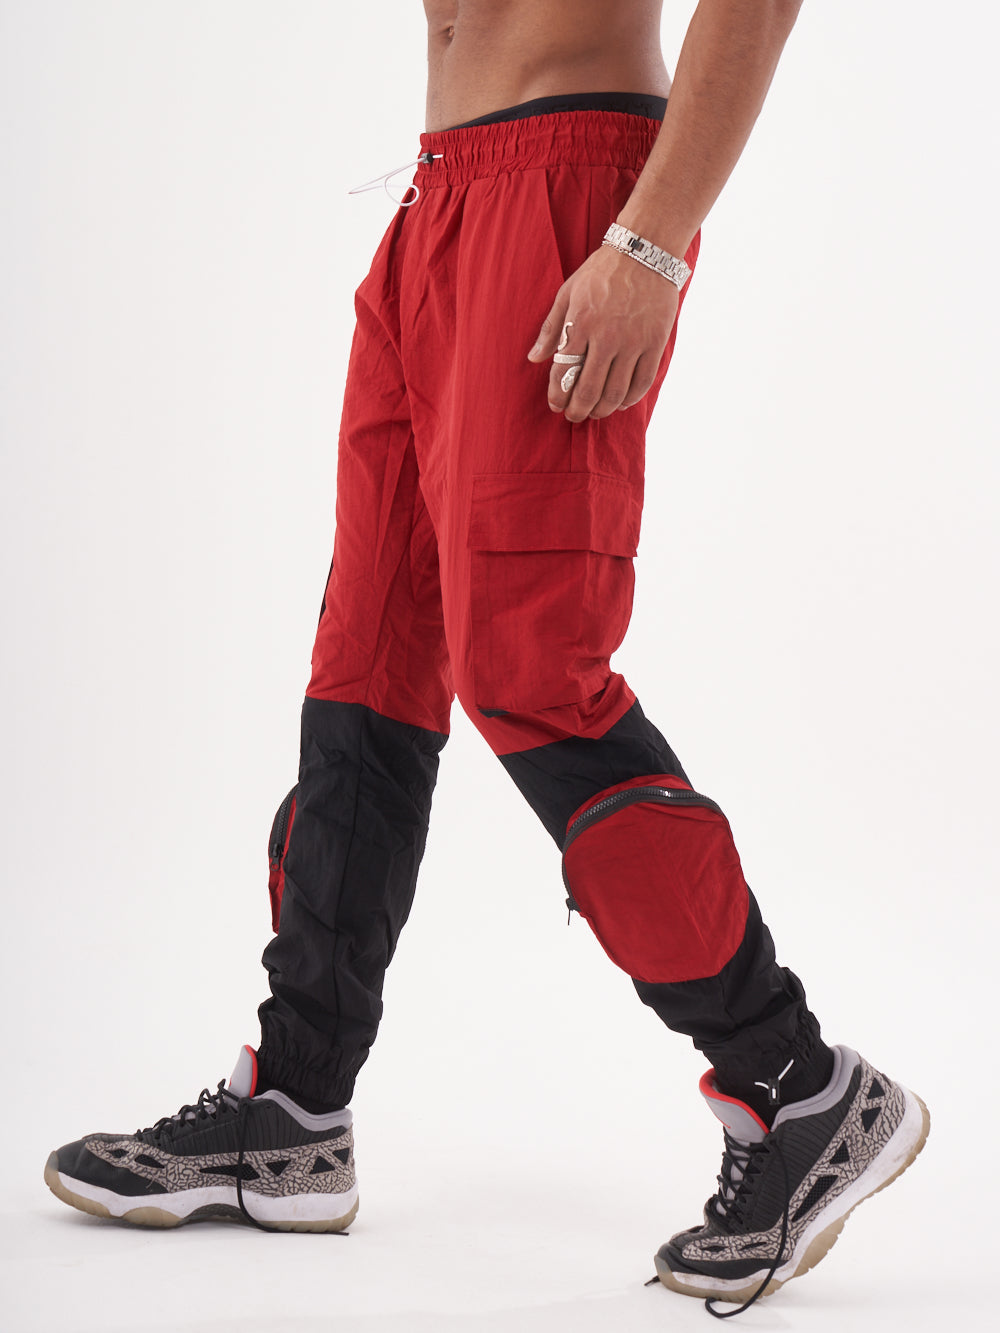 A man wearing RENEGADE | RED jogging pants.